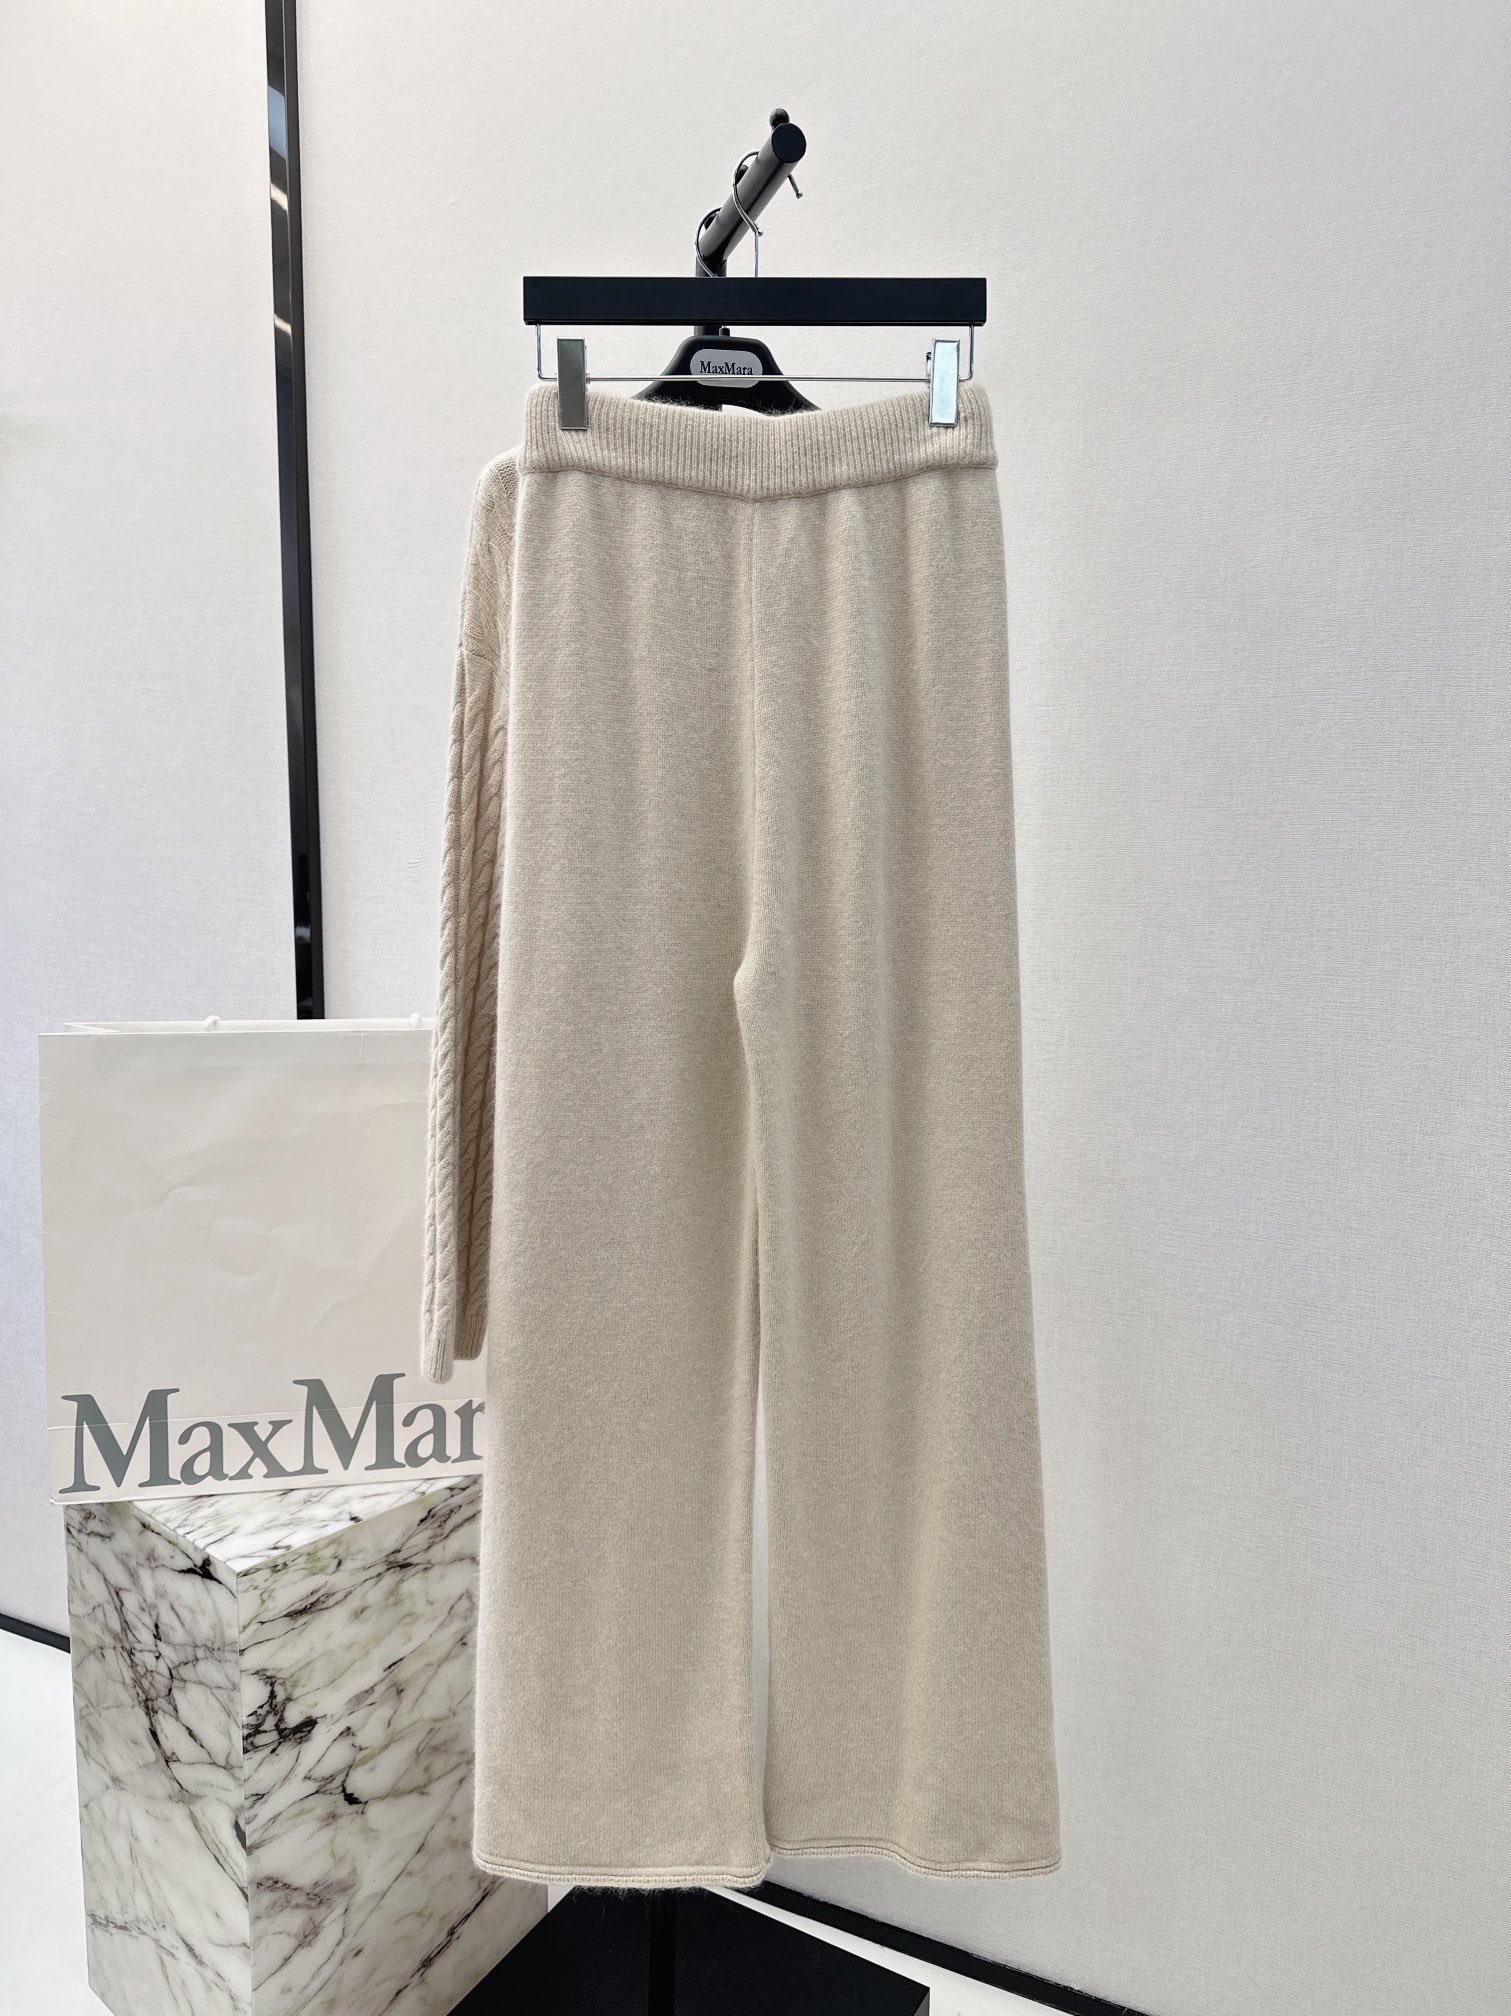 独家首发Max23Ss秋冬最新款针织套装立体麻花精仿套头针织衫+高腰直筒裤休闲时尚的一款整体给人感觉特别